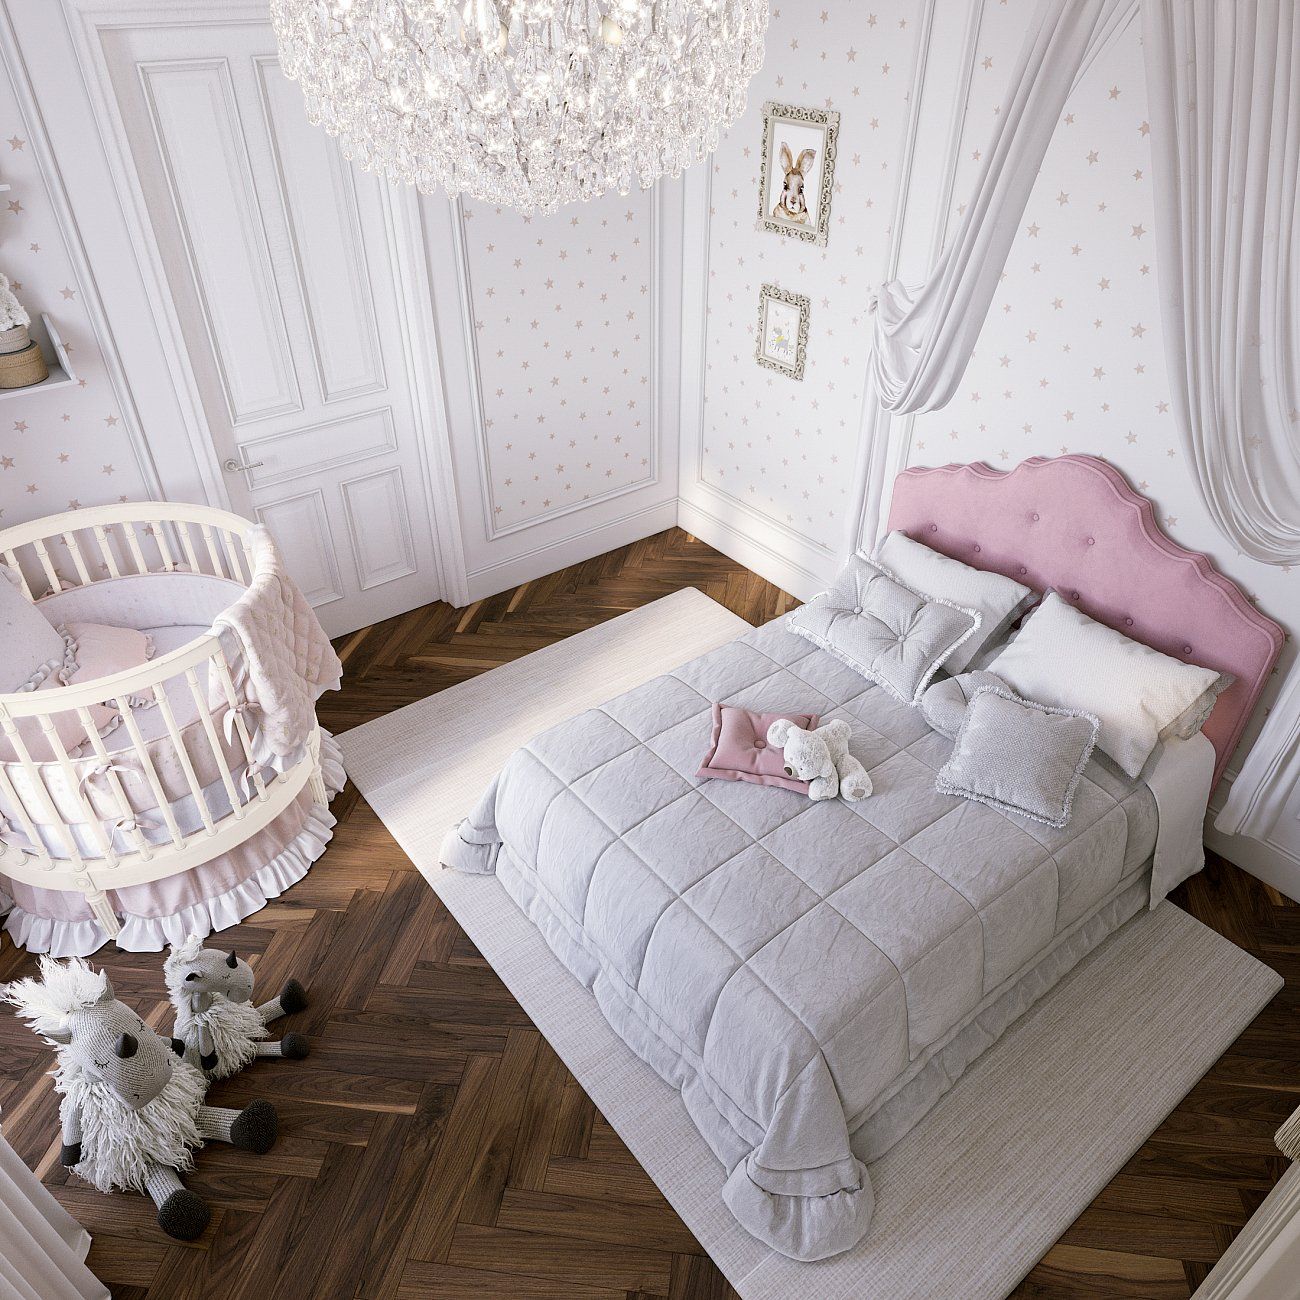 Кровать двуспальная с мягким изголовьем 180х200 см серая Palace Р